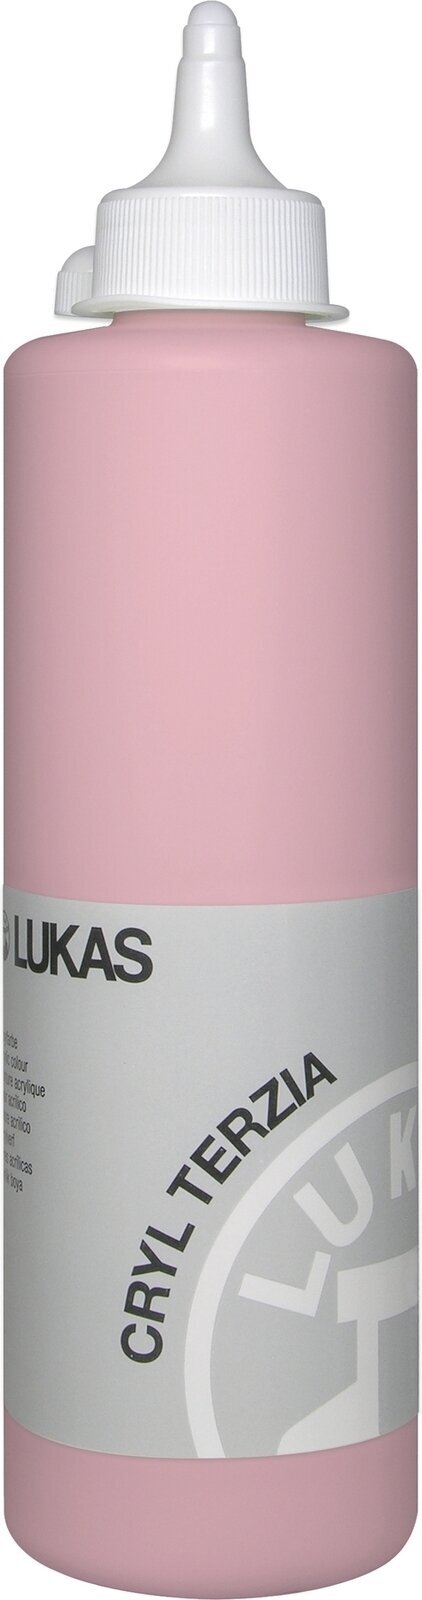 Acrylverf Lukas Cryl Terzia Acrylverf 500 ml Peach Pink